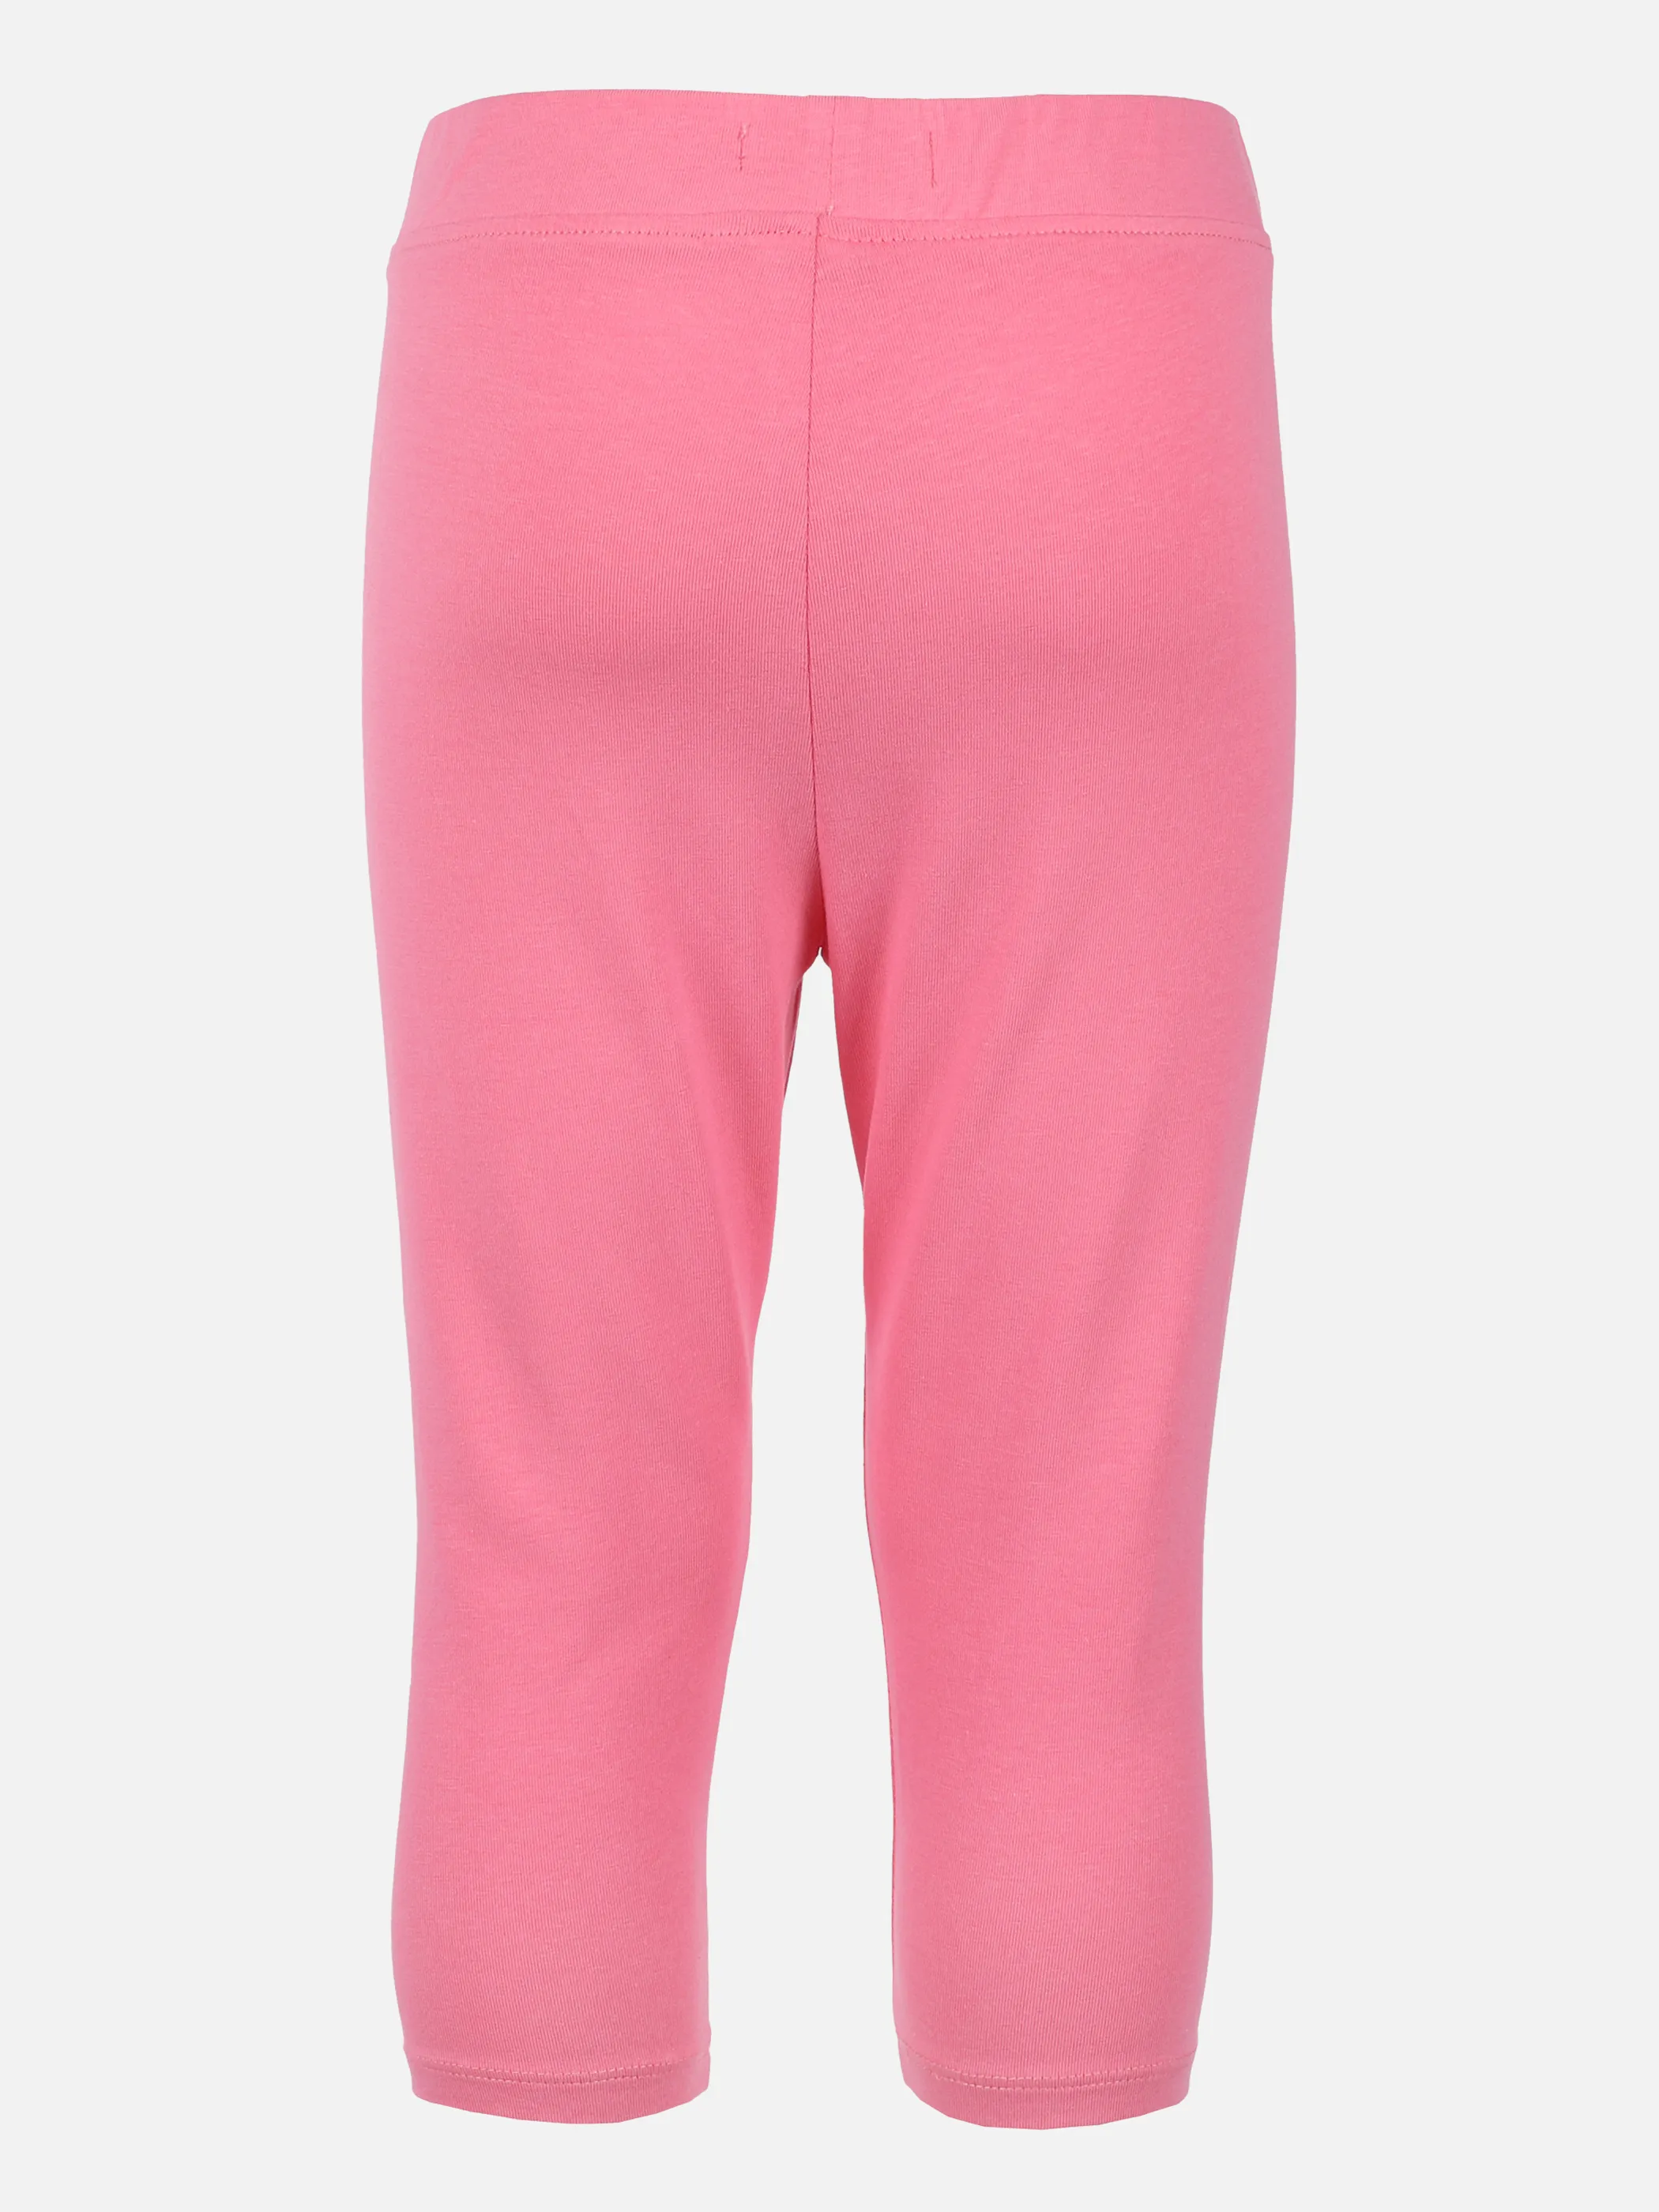 Tom Tailor 1031824 basic capri leggings Pink 865845 23807 2